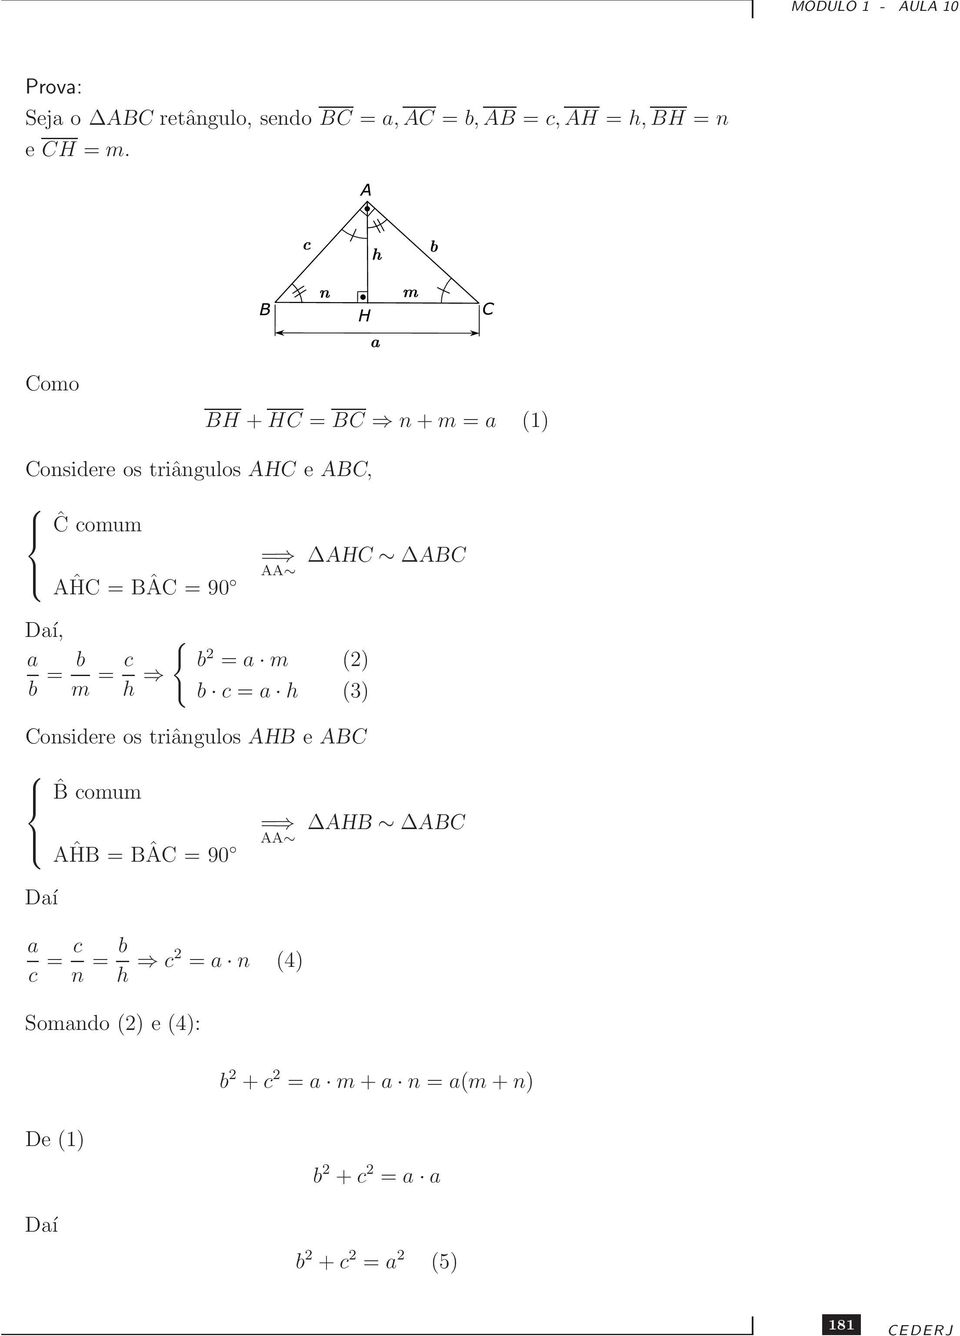 { a b = b m = c h b = a m () b c = a h (3) Considere os triângulos AHB e ABC ˆB comum AĤB = BÂC = 90 = AA